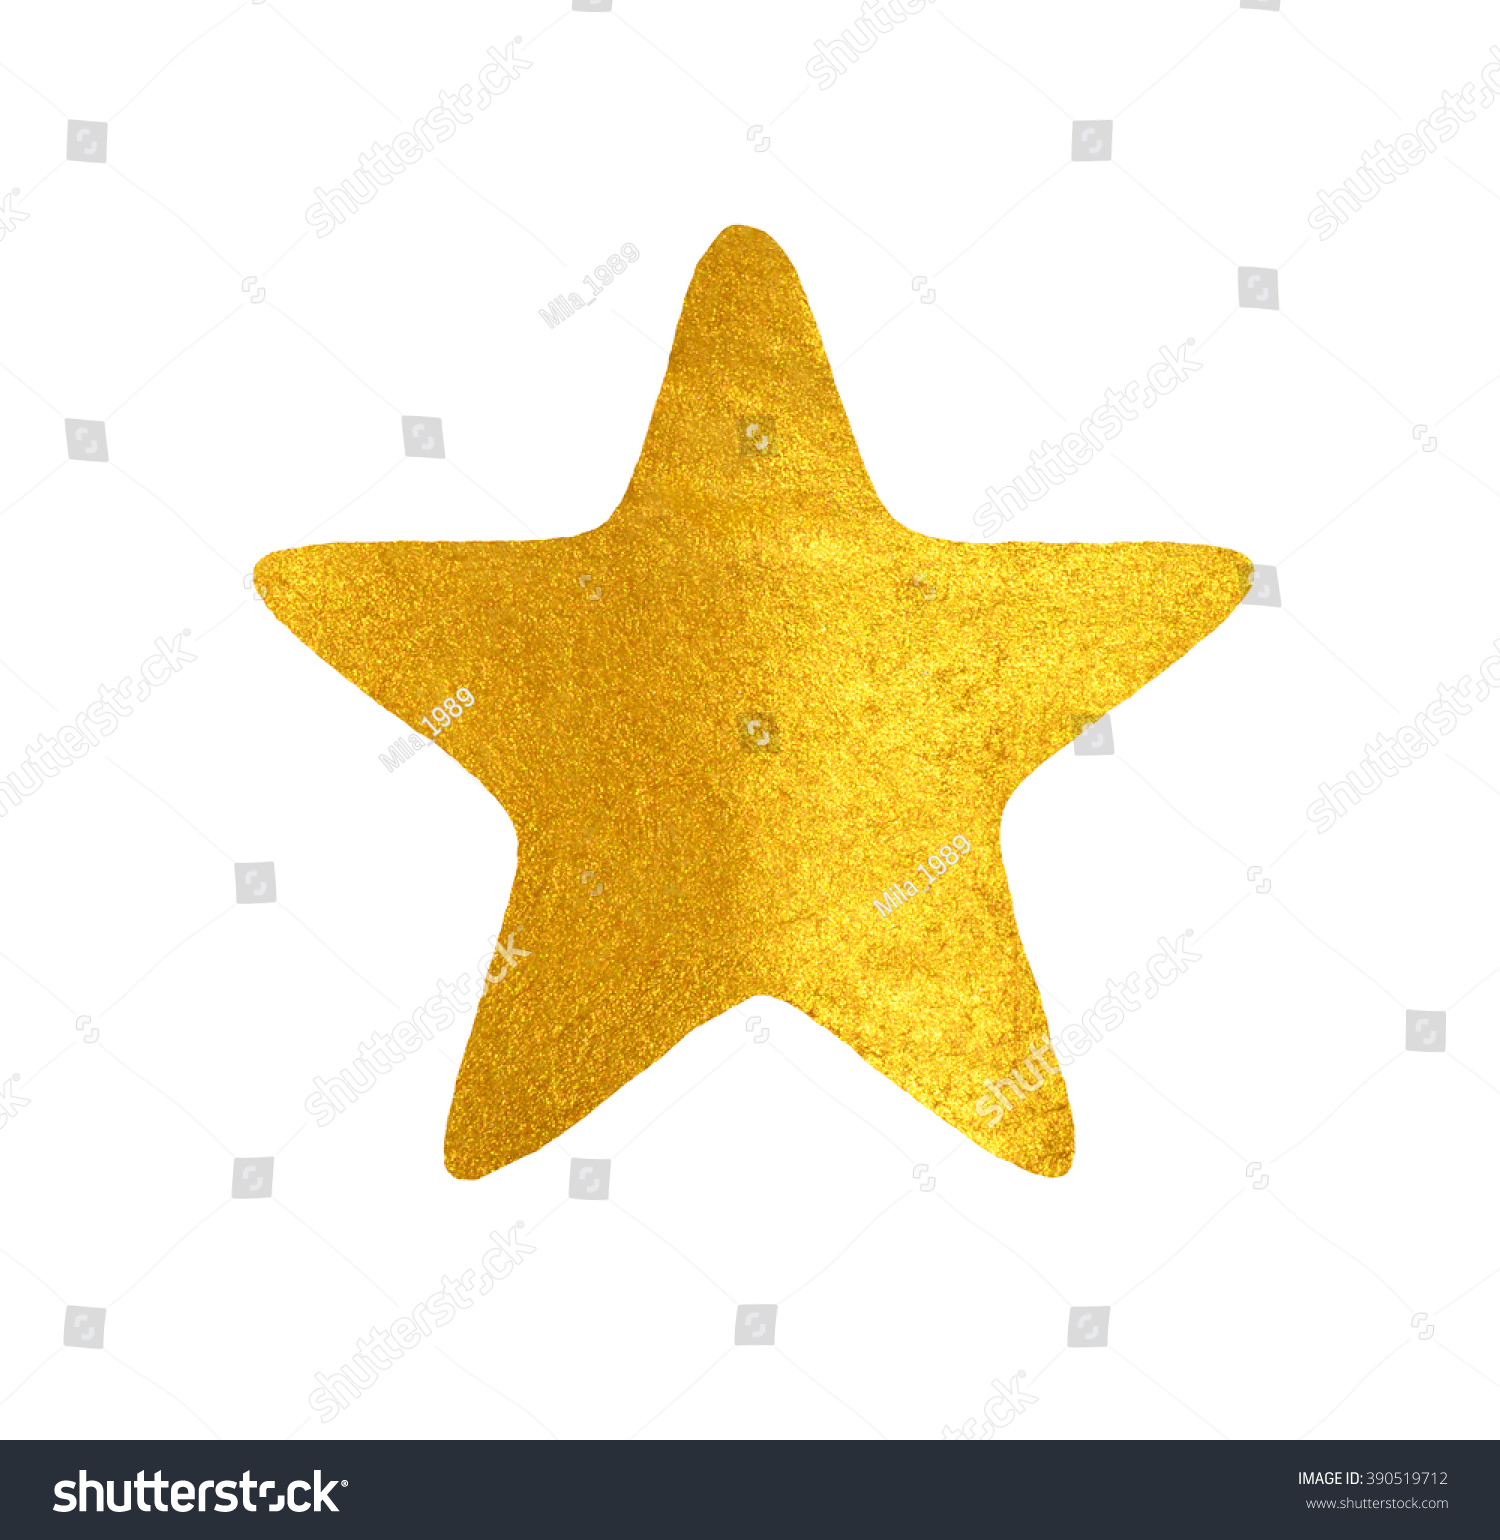 Golden Handpainted Star On White Background Stock Illustration ...